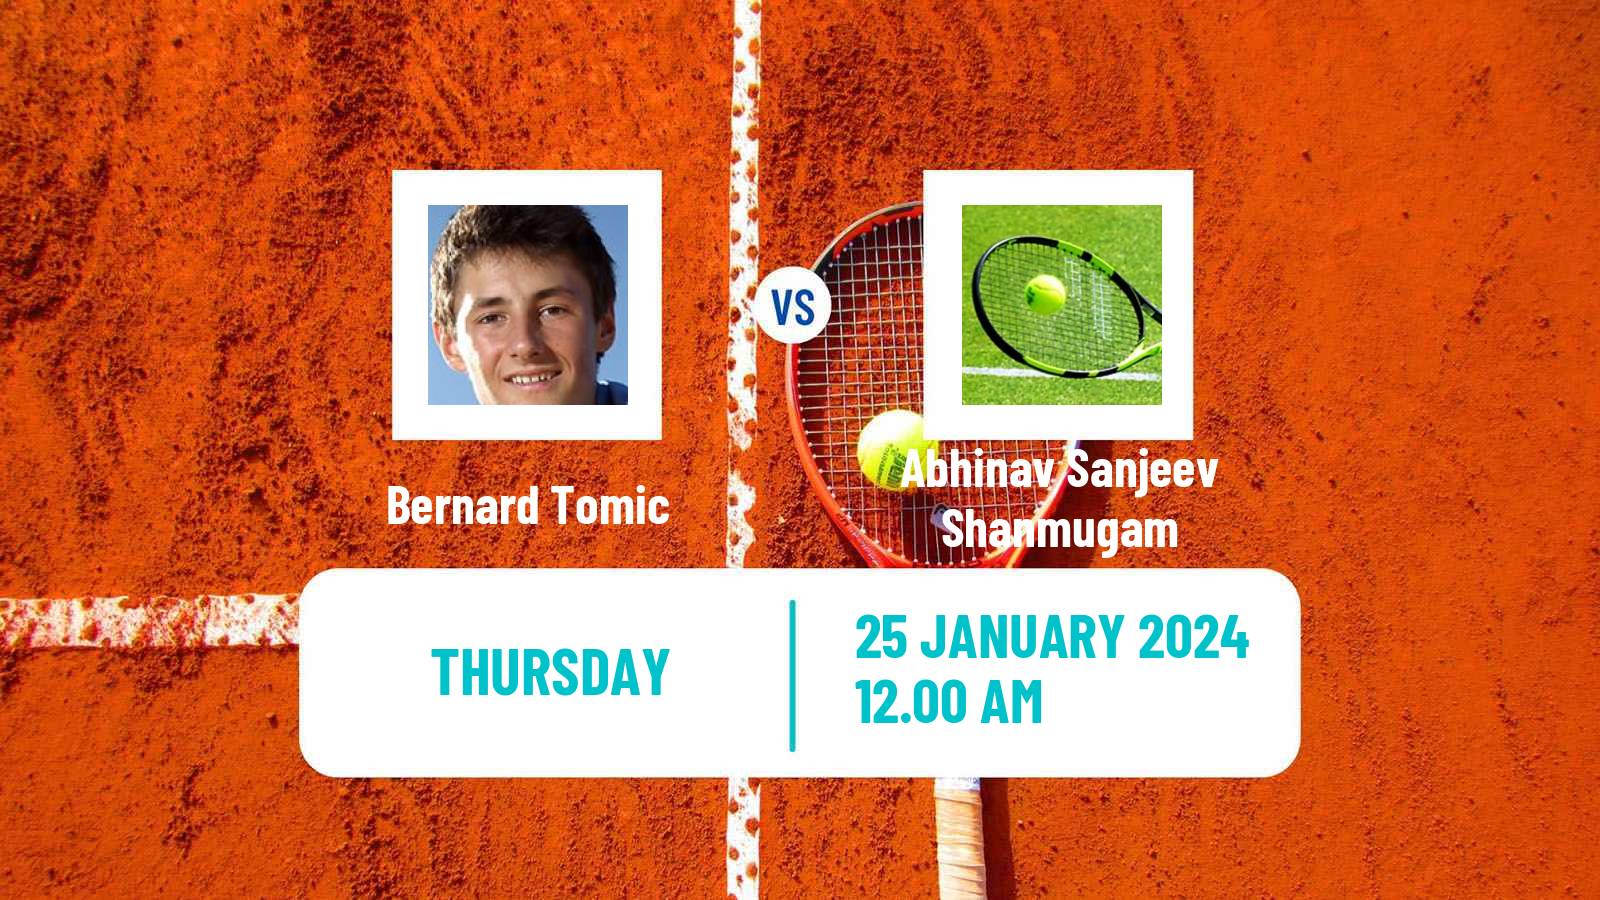 Tennis ITF M25 Chennai Men Bernard Tomic - Abhinav Sanjeev Shanmugam